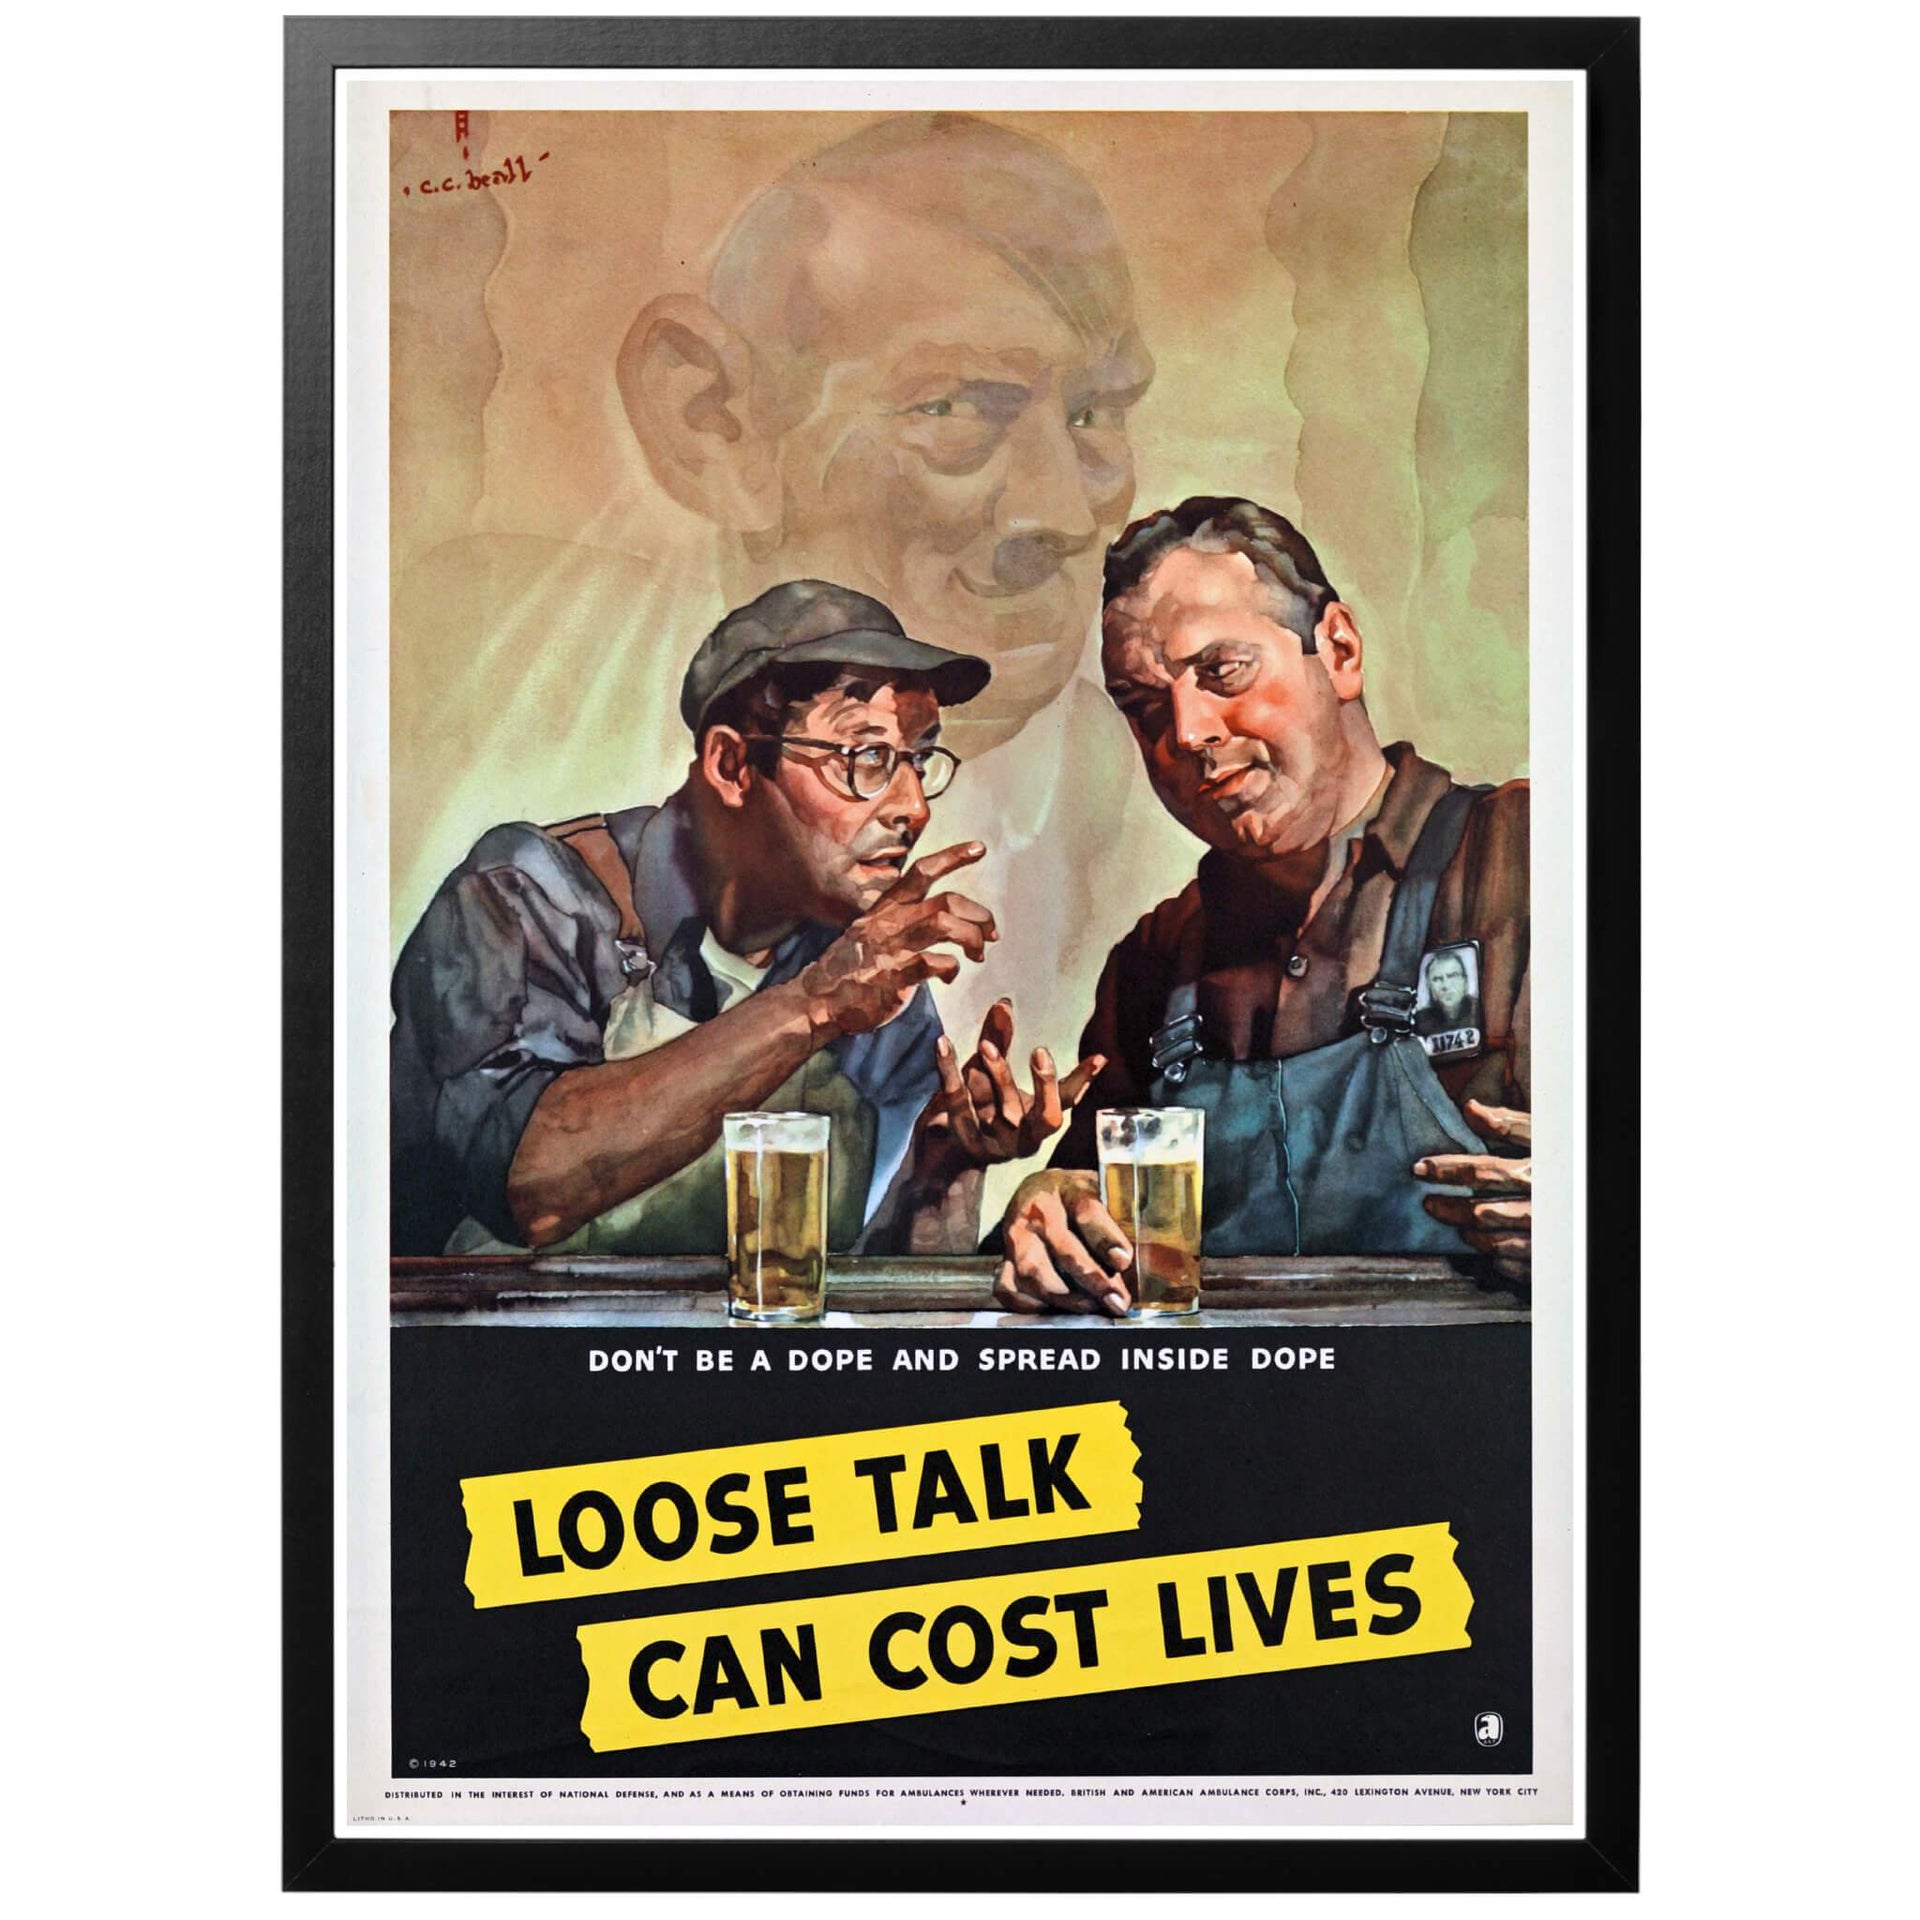 Loose talk can cost lives  - Löst prat kan kosta liv Amerikansk WWII från 1942.  En härlig affisch med ett kraftfull budskap - håll tyst, motverka spionage och prata inte om amerikanska statens angelägenheter. 